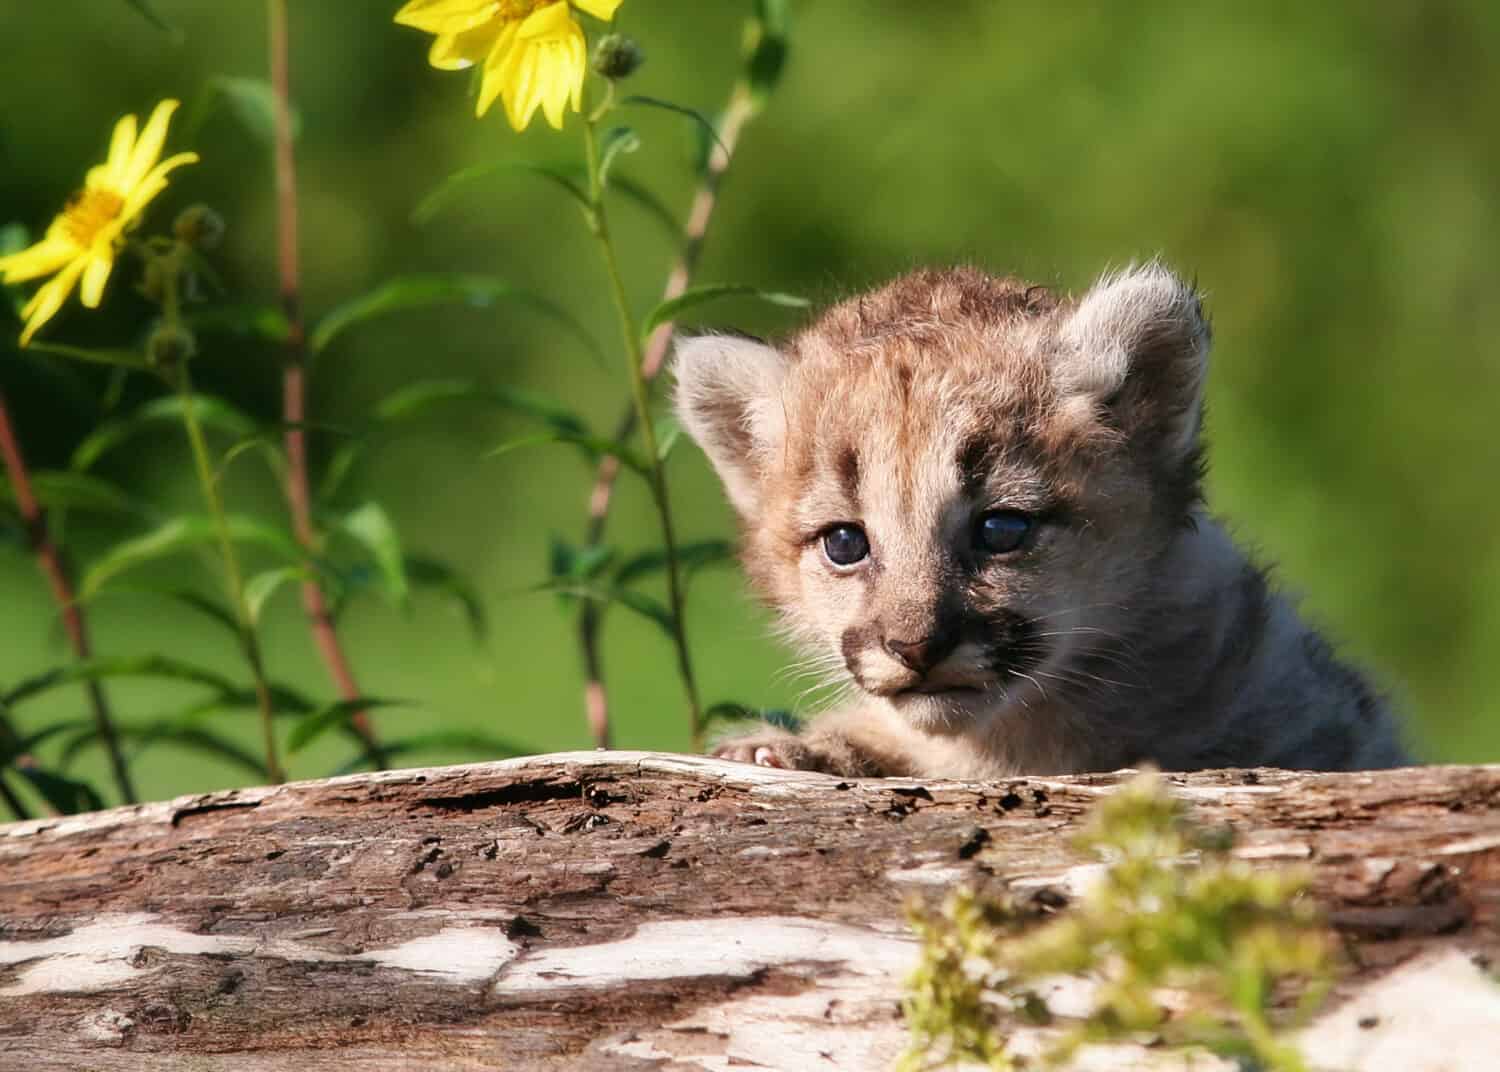 Young mountain lion kitten